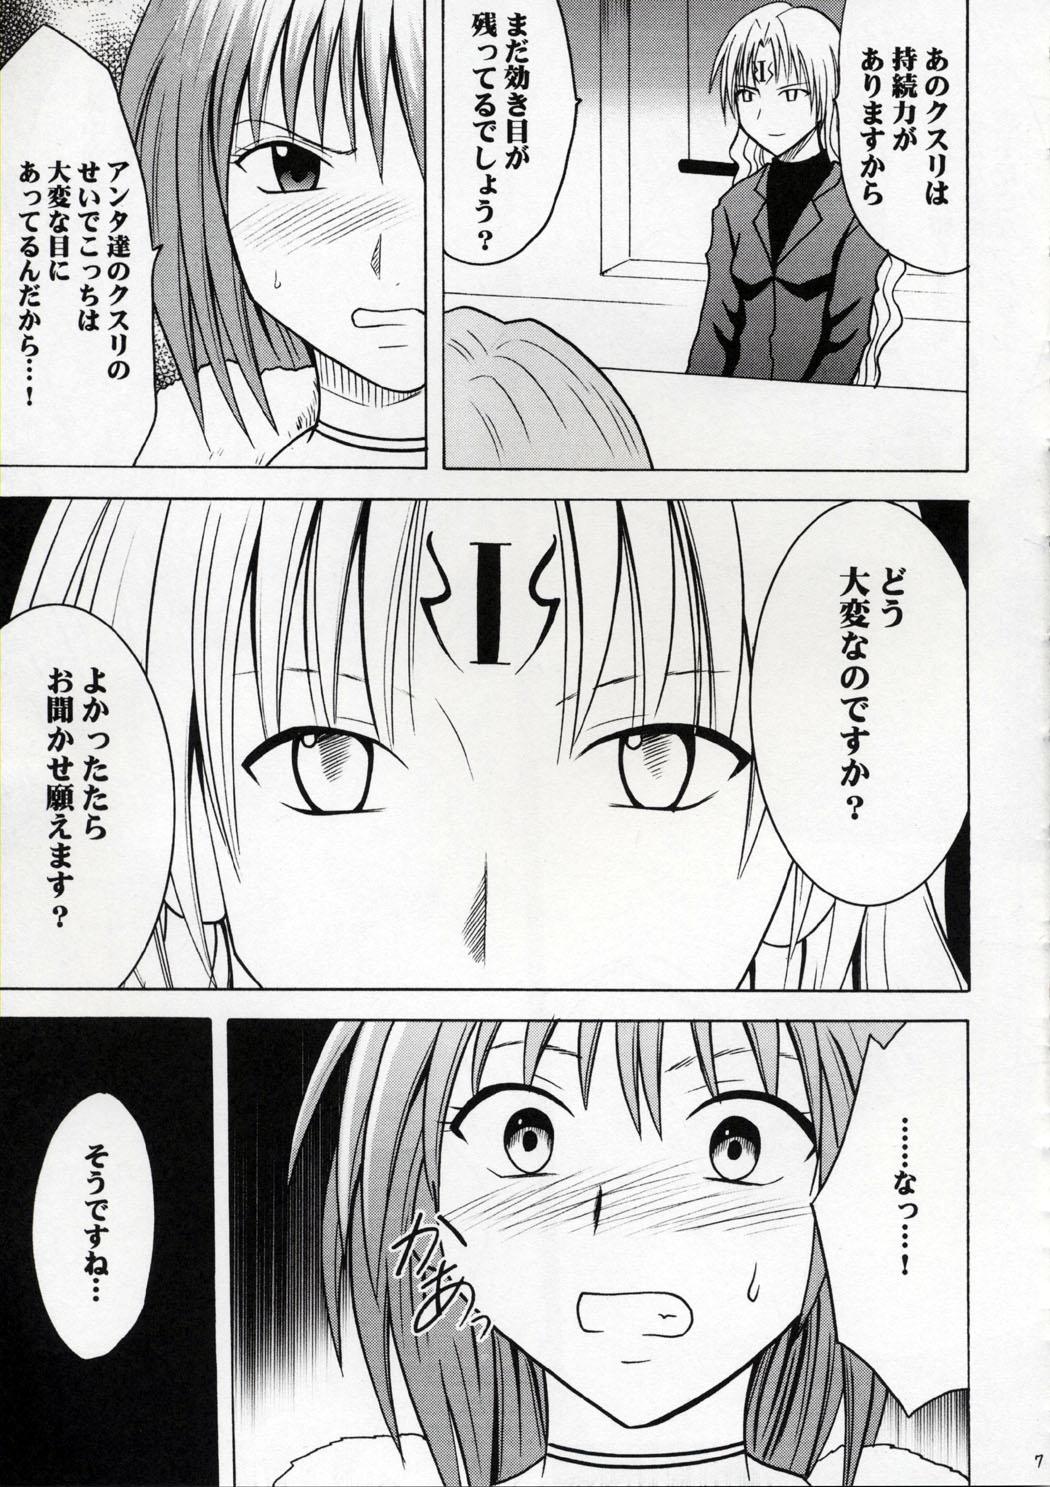 Analfuck Kedakaki Hyou - Black cat 18yo - Page 6